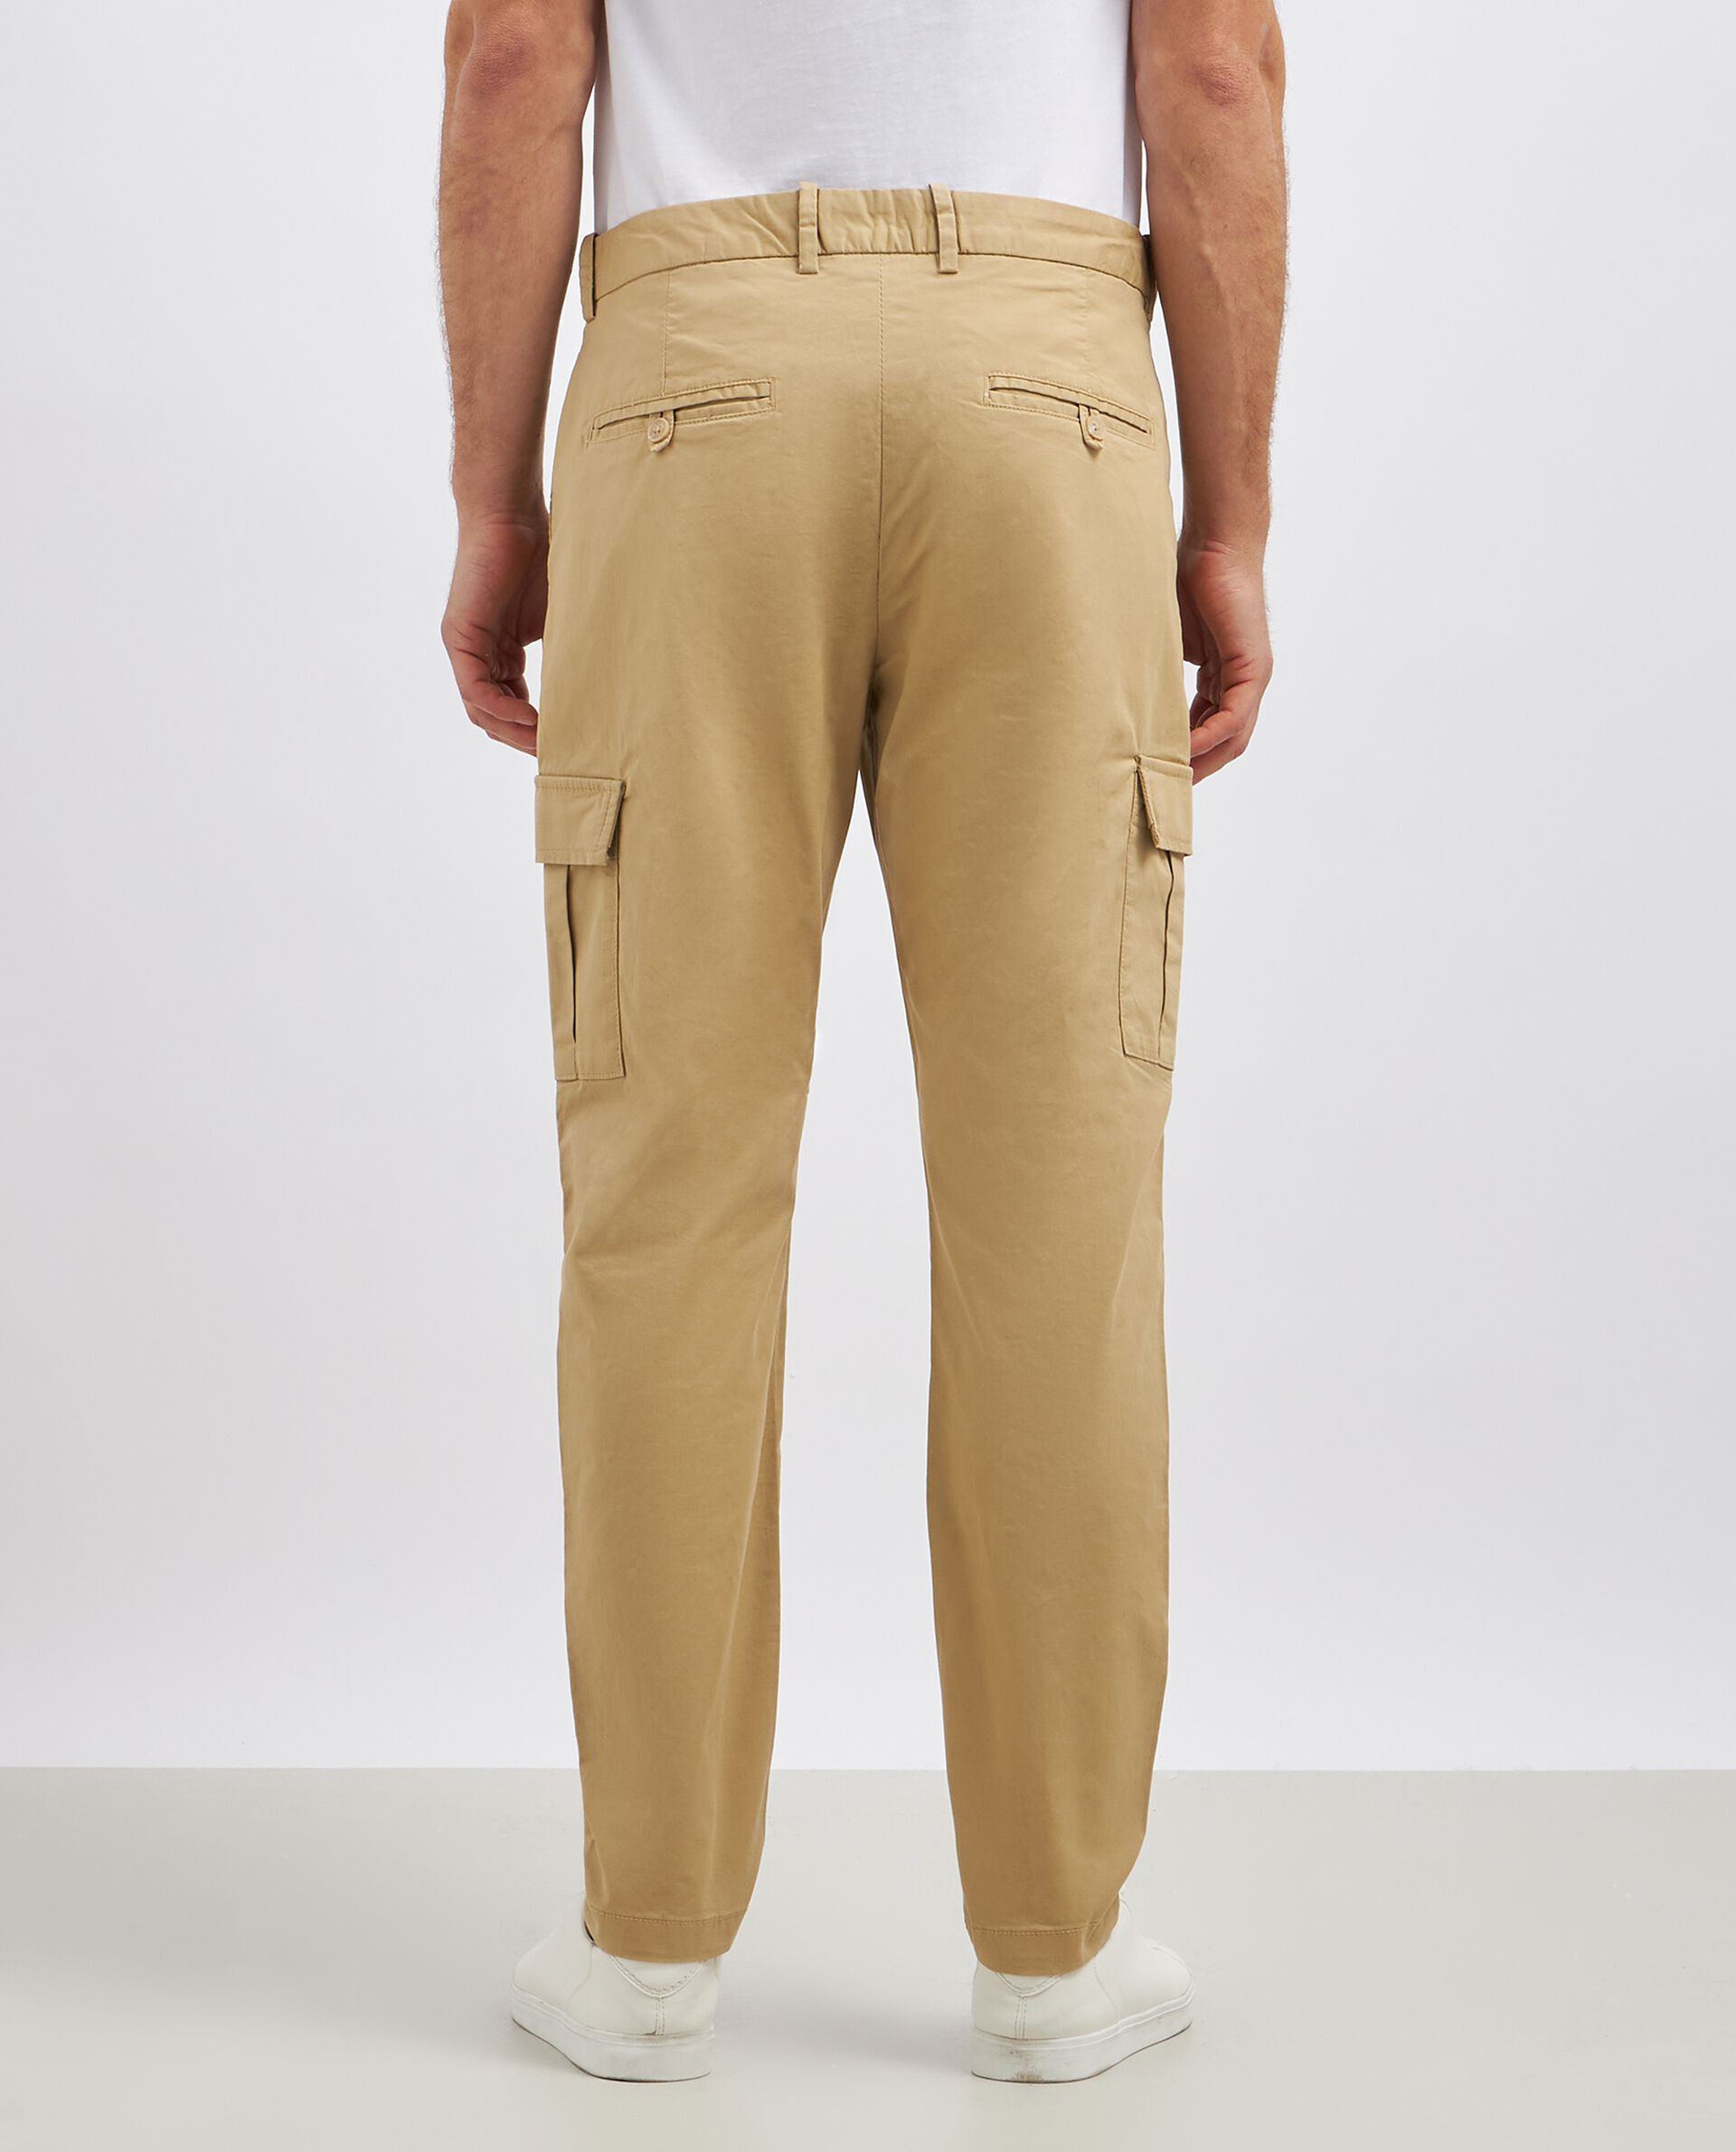 Pantaloni cargo in cotone stretch uomo